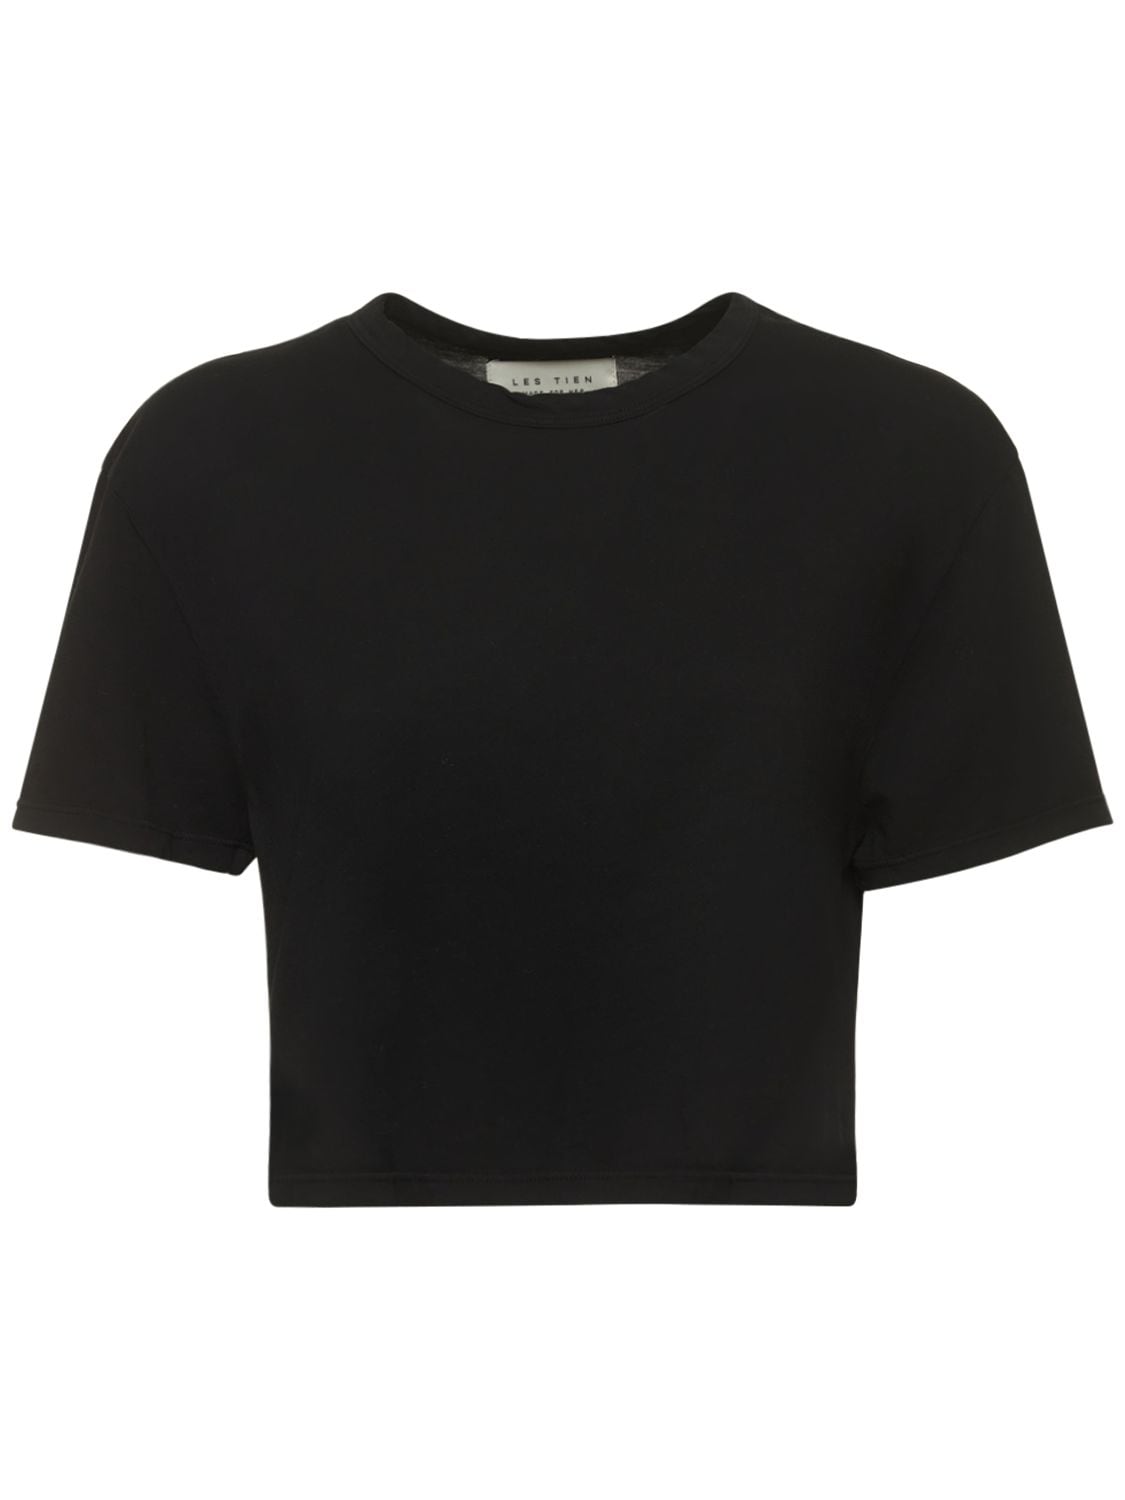 Les Tien Crop Cotton T-shirt In Black